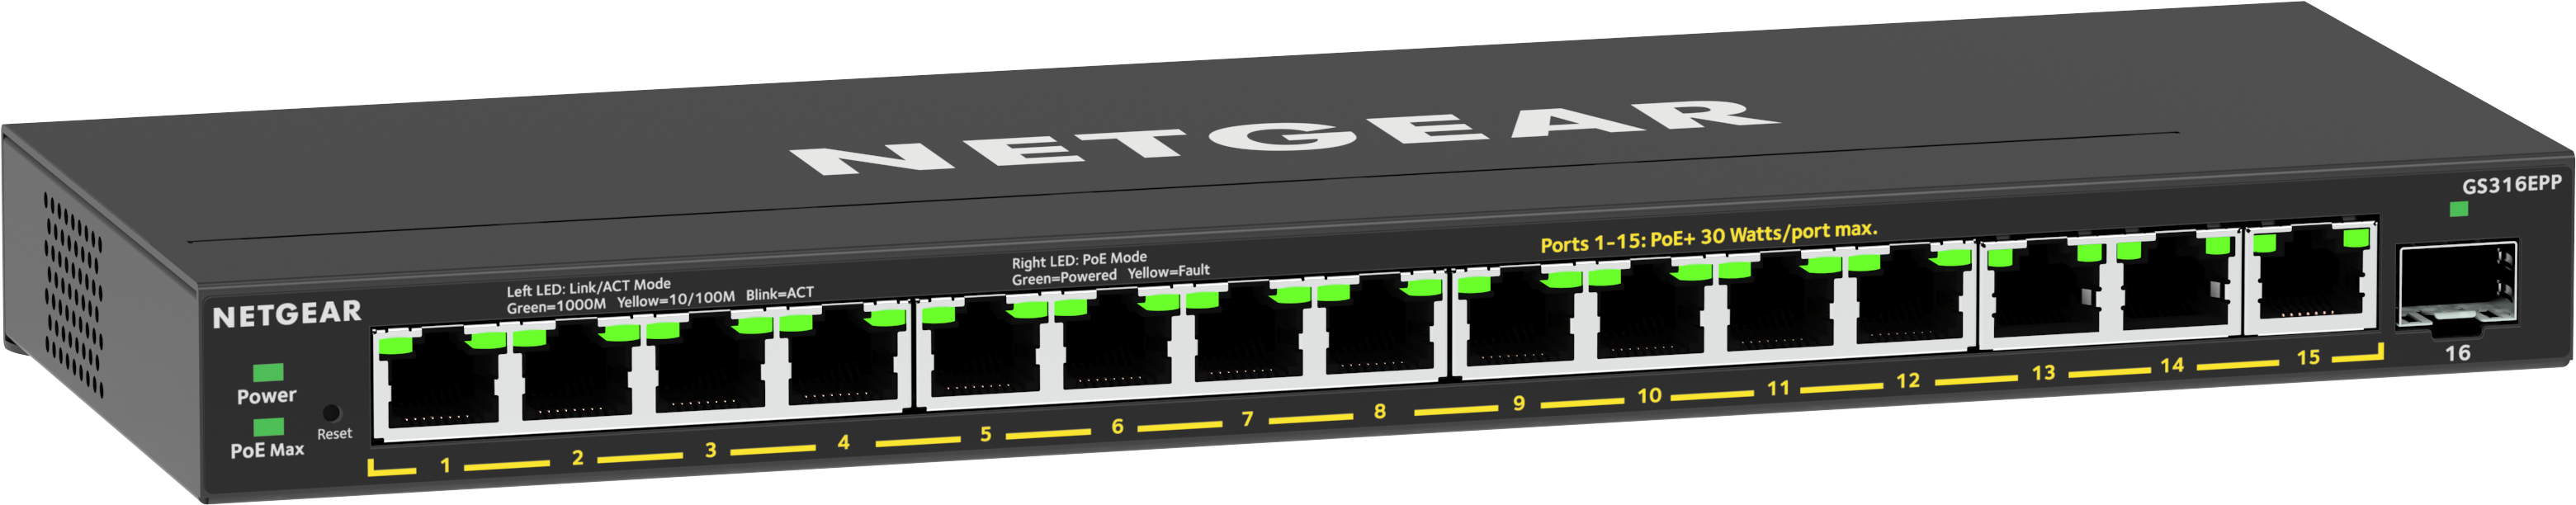 Netgear Plus GS316EPP - Switch - managed - 15 x 10/100/1000 (PoE+)